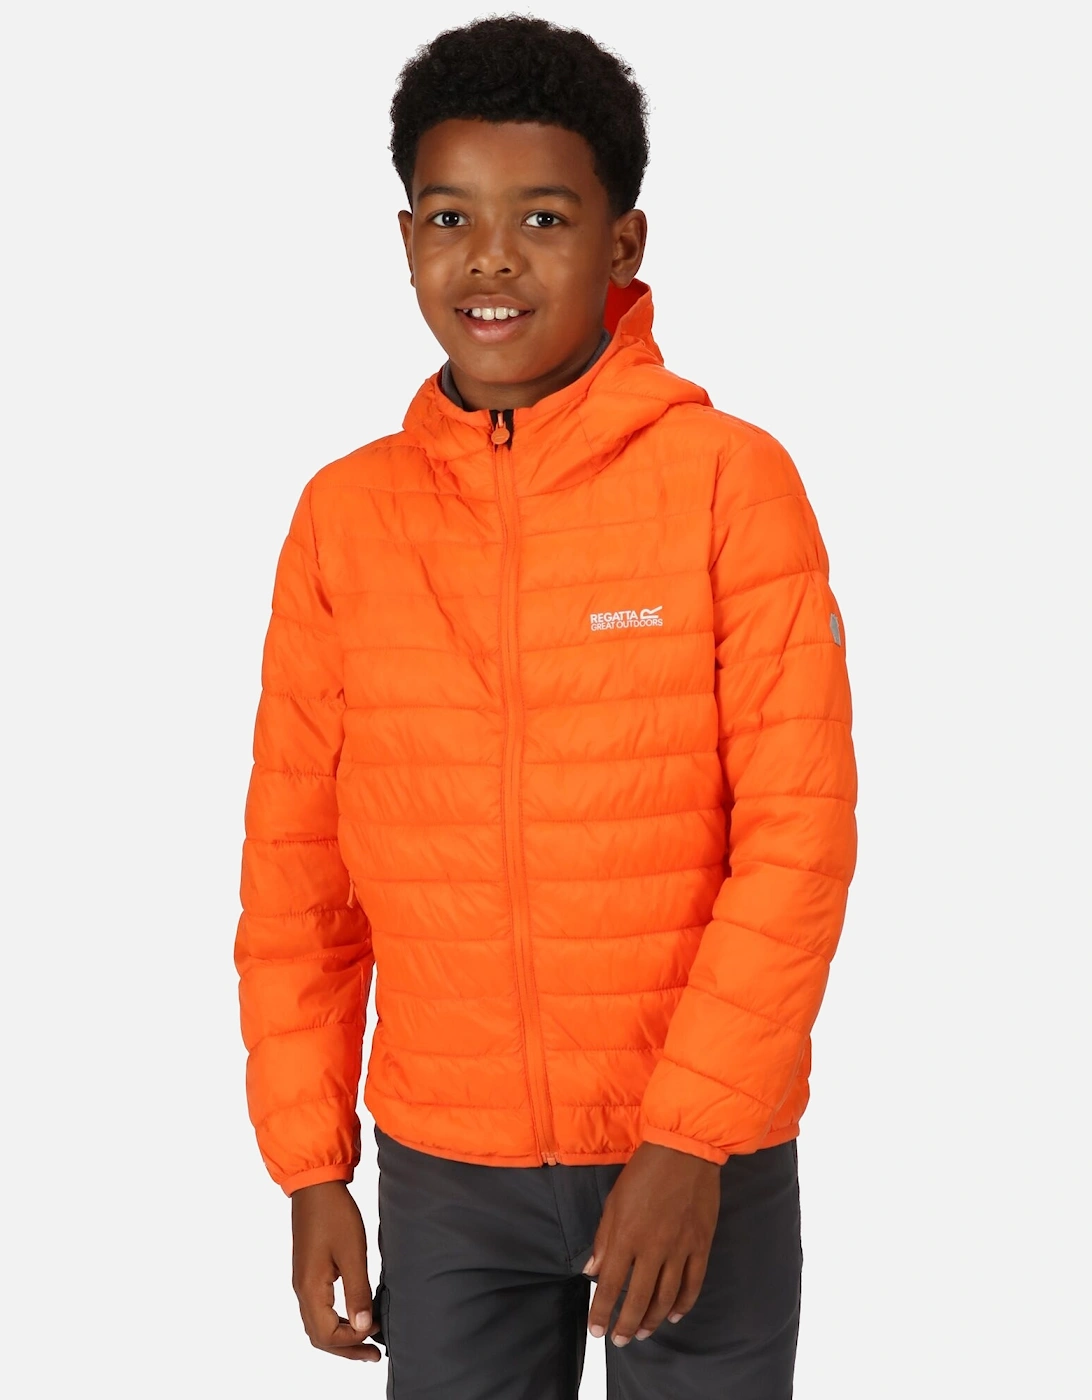 Childrens/Kids Hillpack Hooded Jacket